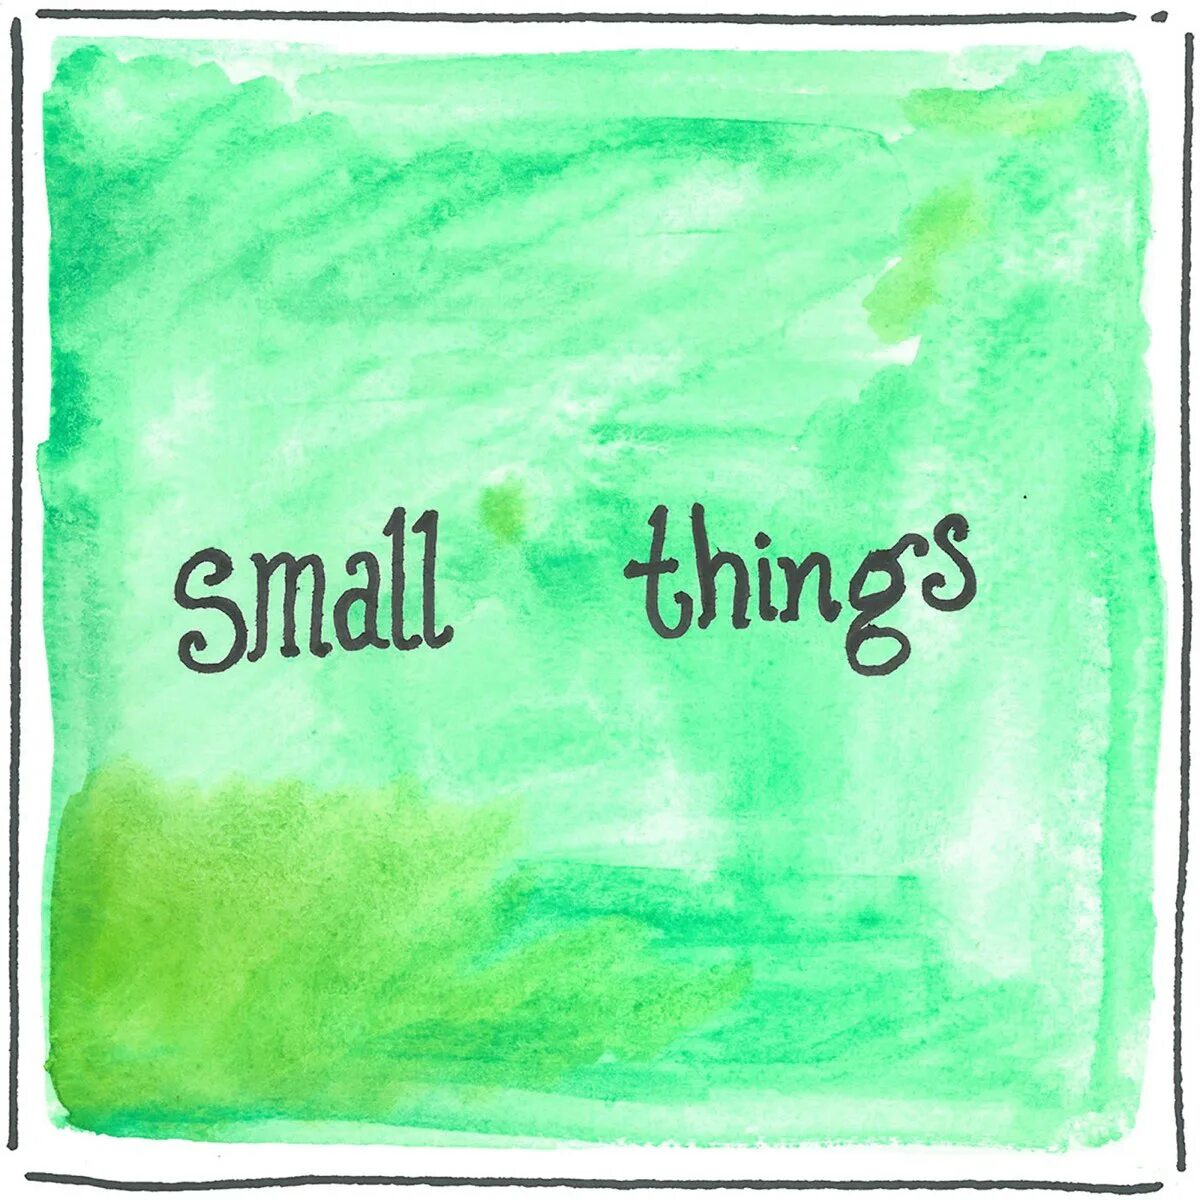 Small things. Фото small things. Small things слова. Small things like this. This small things